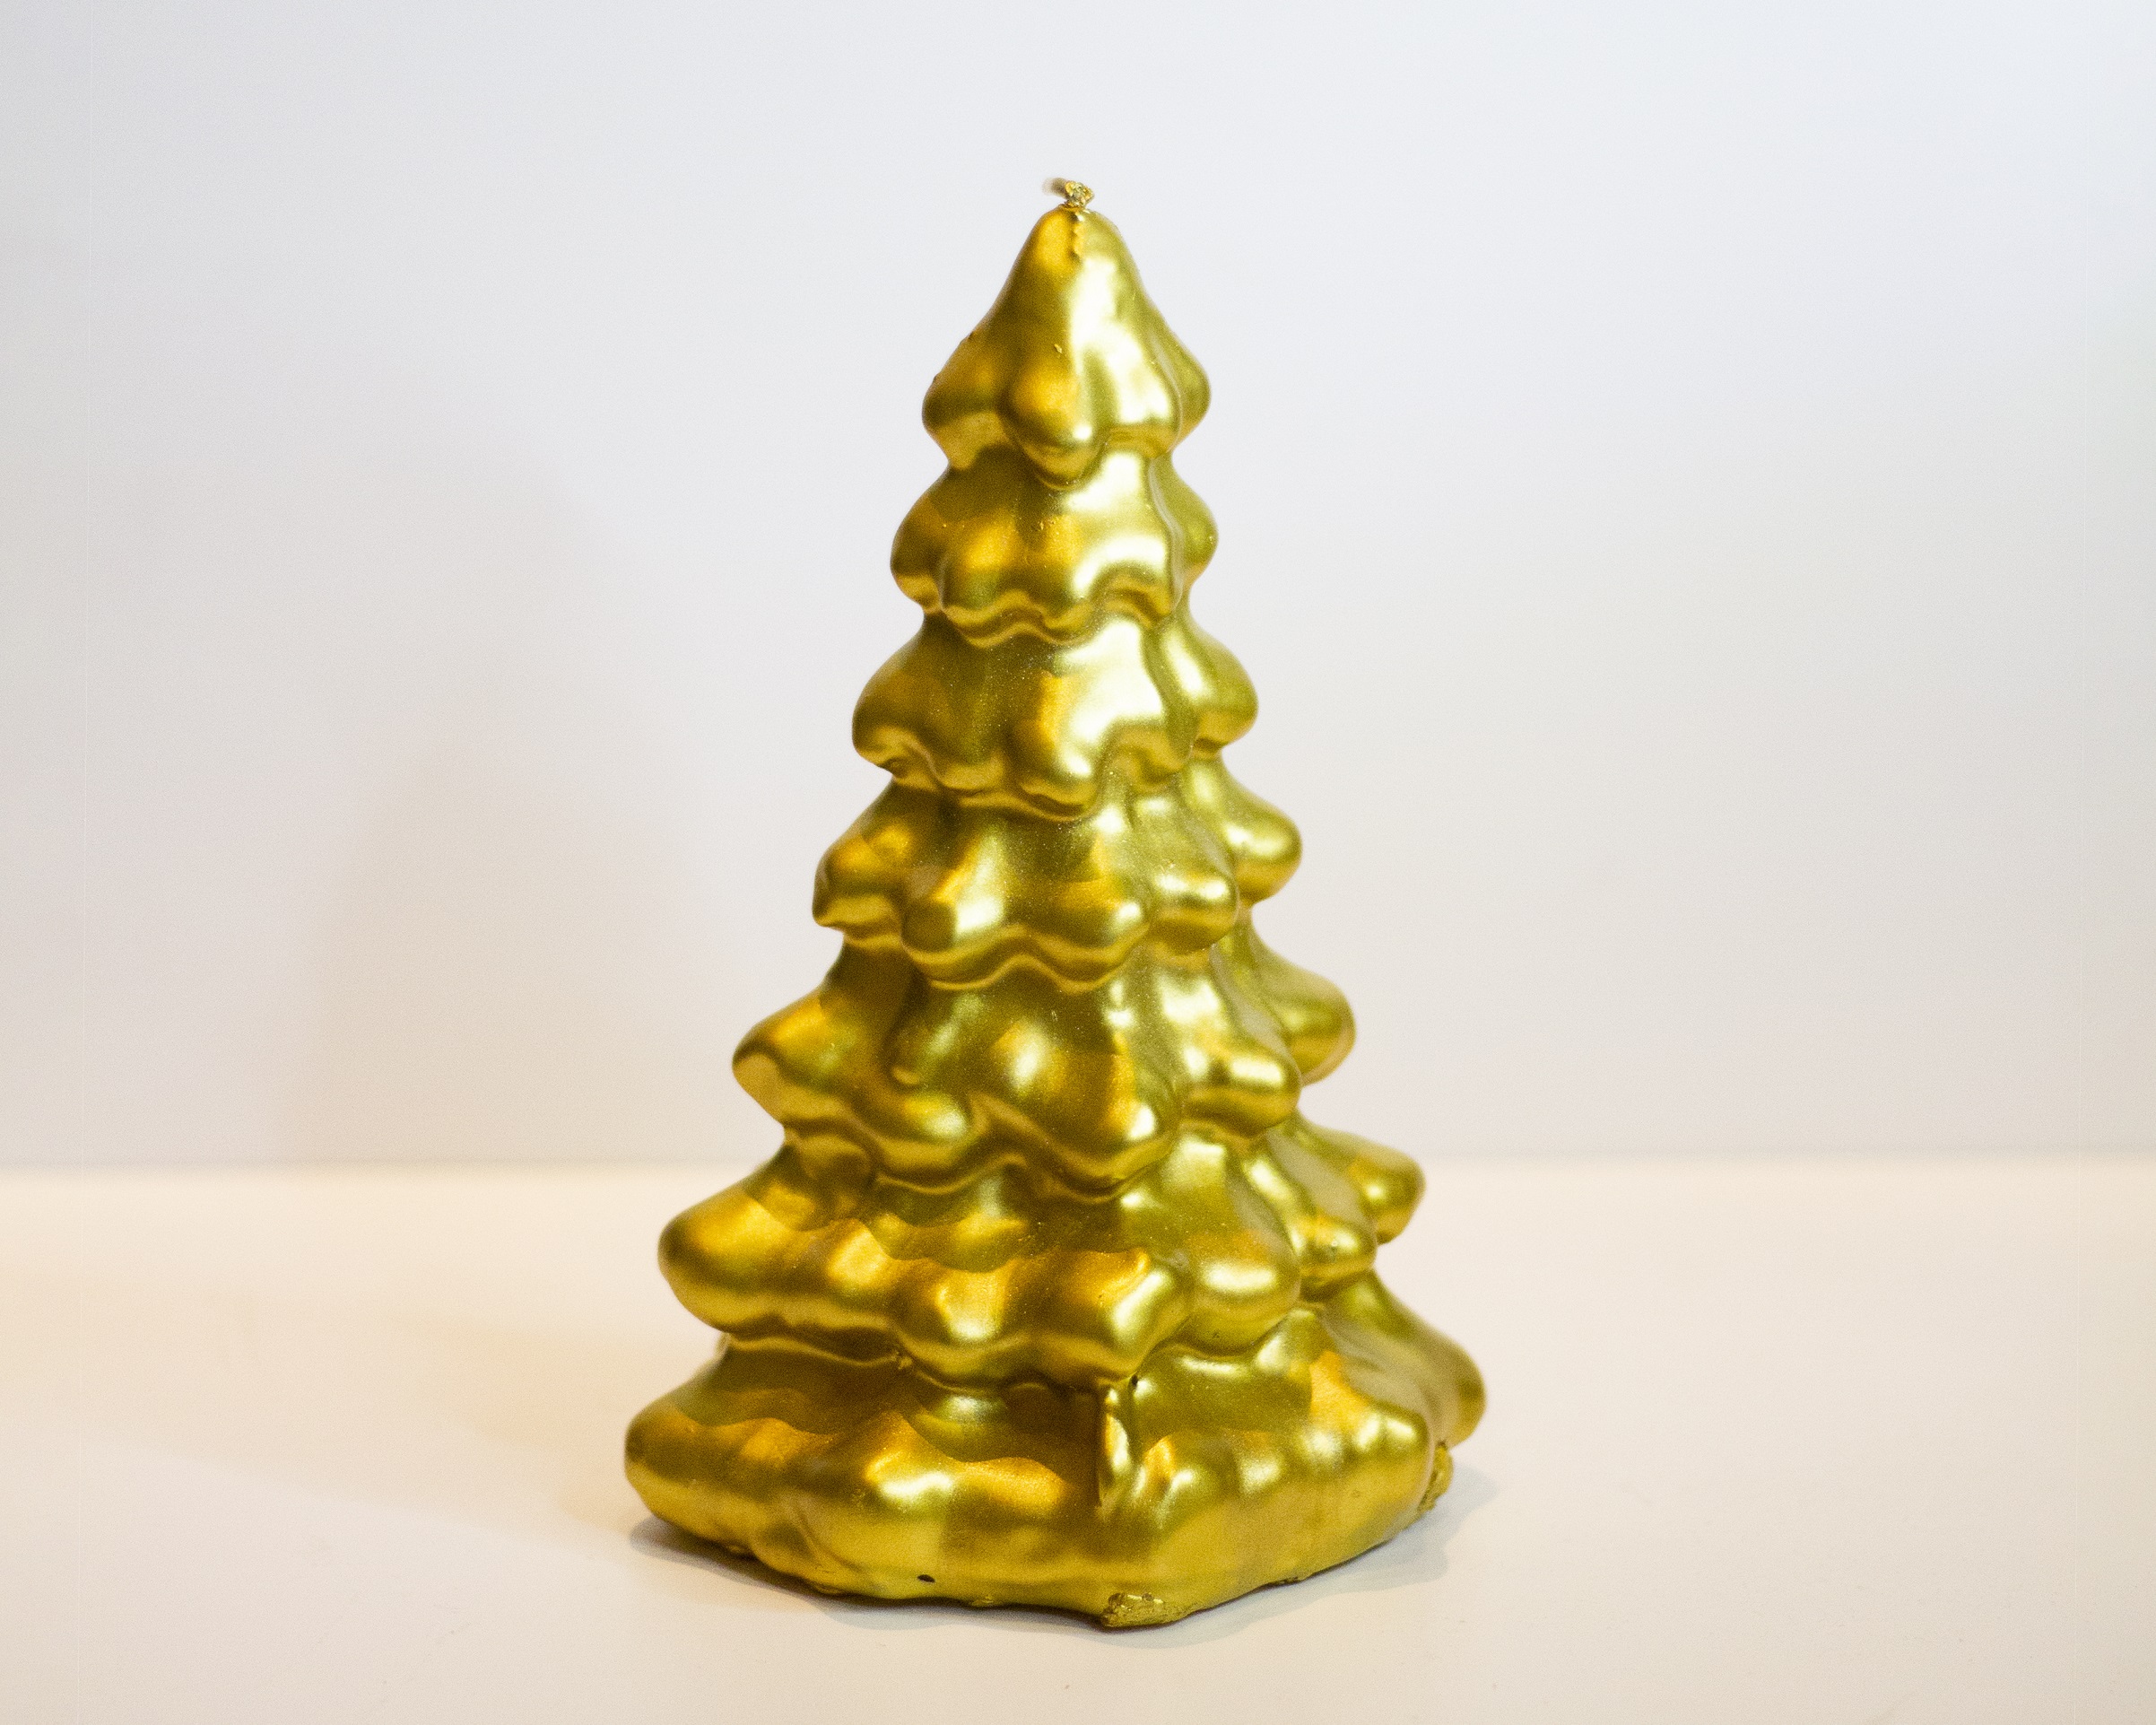 Imagen destacada de 'Vela árbol de navidad oro'